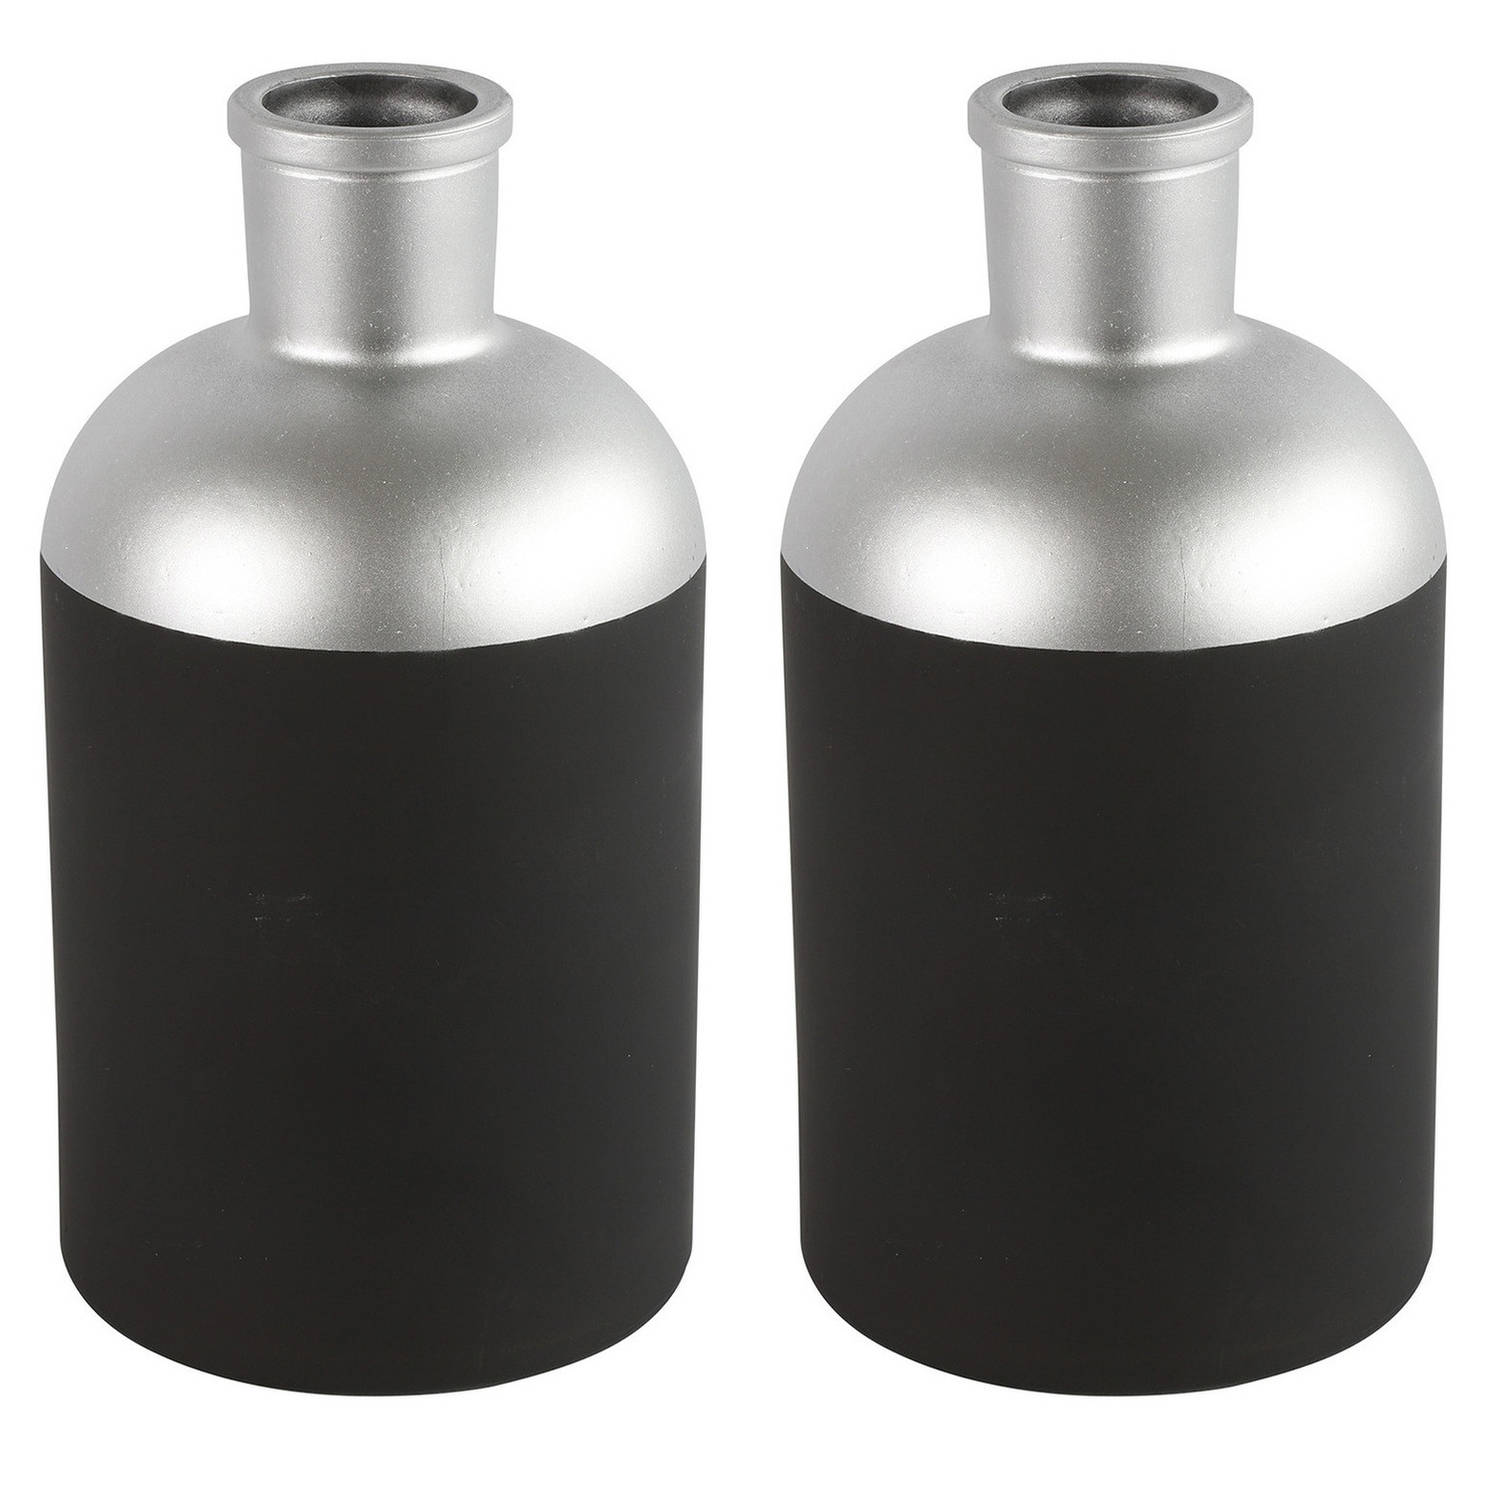 Countryfield Bloemen-deco Vaas 2x Zwart-zilver Glas Luxe Fles Vorm D14 X H26 Cm Vazen